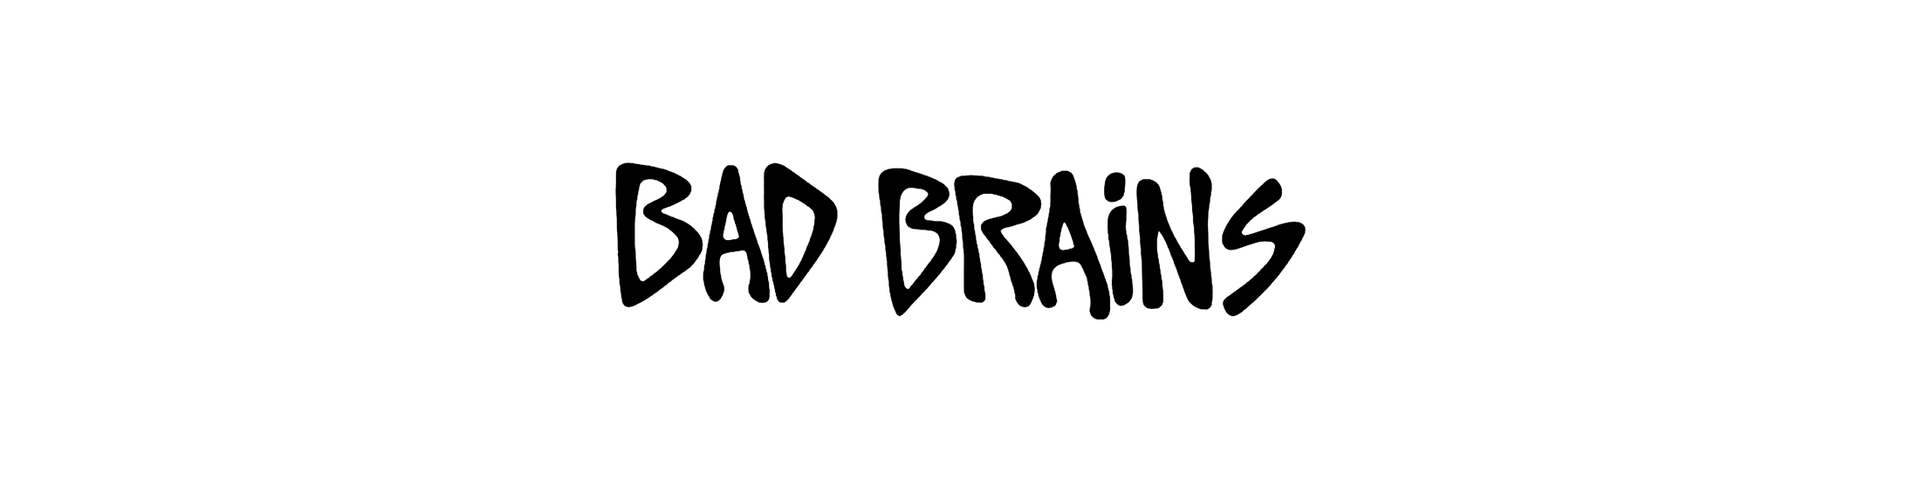 Shop – Bad Brains – Band & Music Merch – Cold Cuts Merch